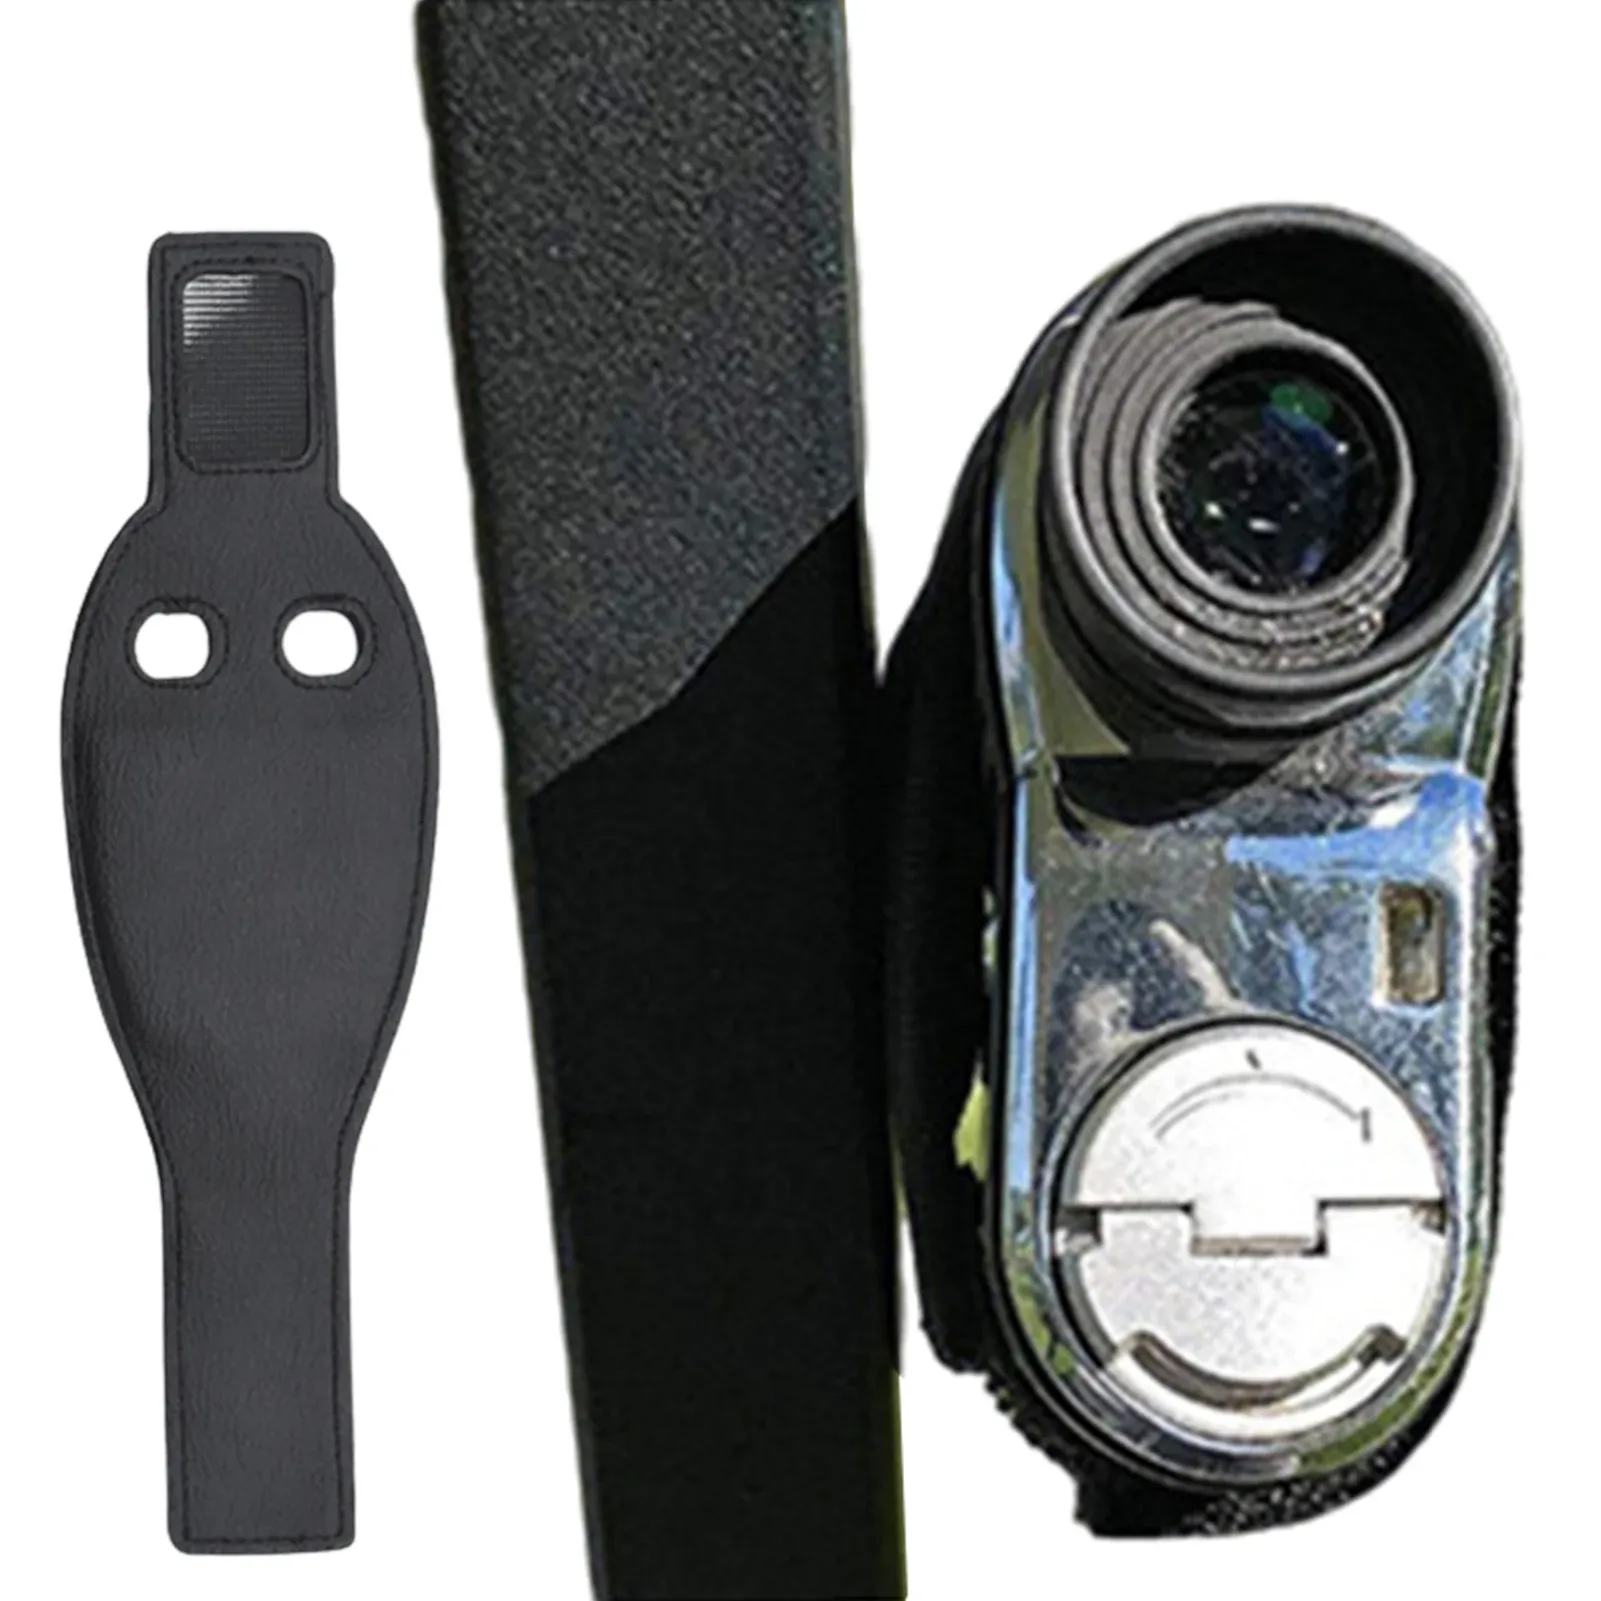 Accessories Range Finder Magnet Holder Strap Golfing Rangefinder Holder Strap With 8 Strong Magnets Attaching Rangefinders To Golf Cart Rail